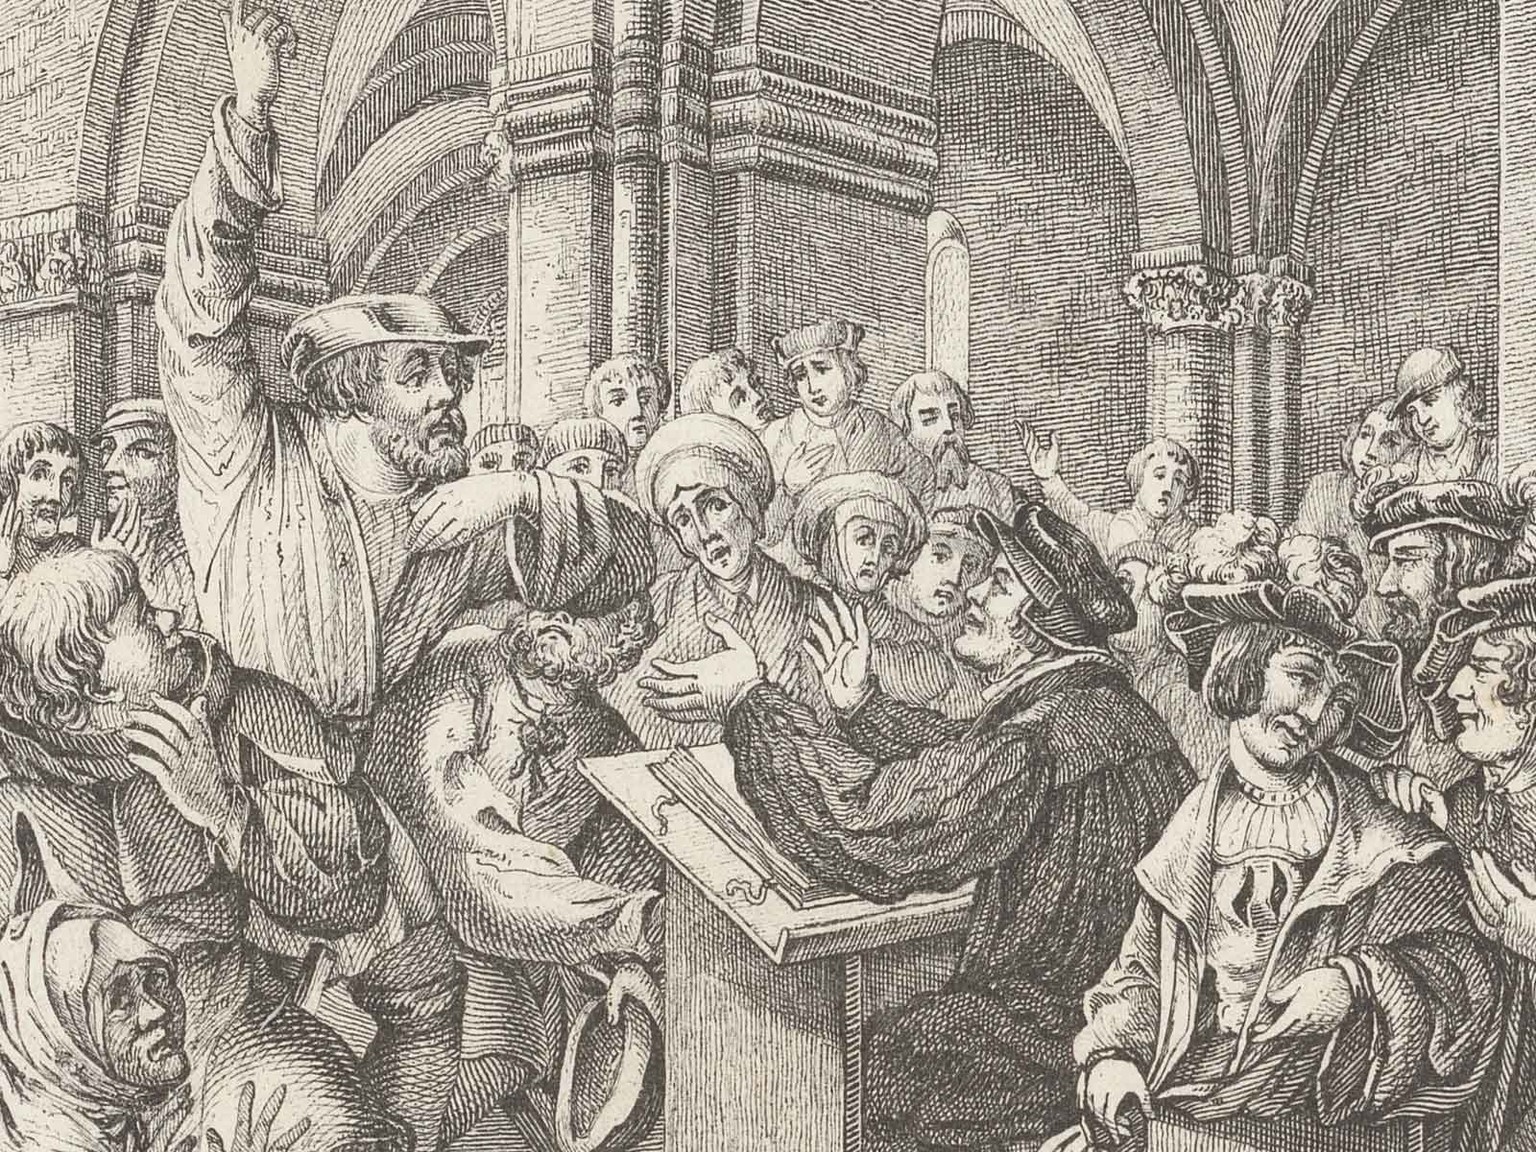 Der Reformator Zwingli im Disput mit Täuferinnen und Täufern, Lithografie von 1842.
https://www.e-rara.ch/zuz/content/titleinfo/28140872